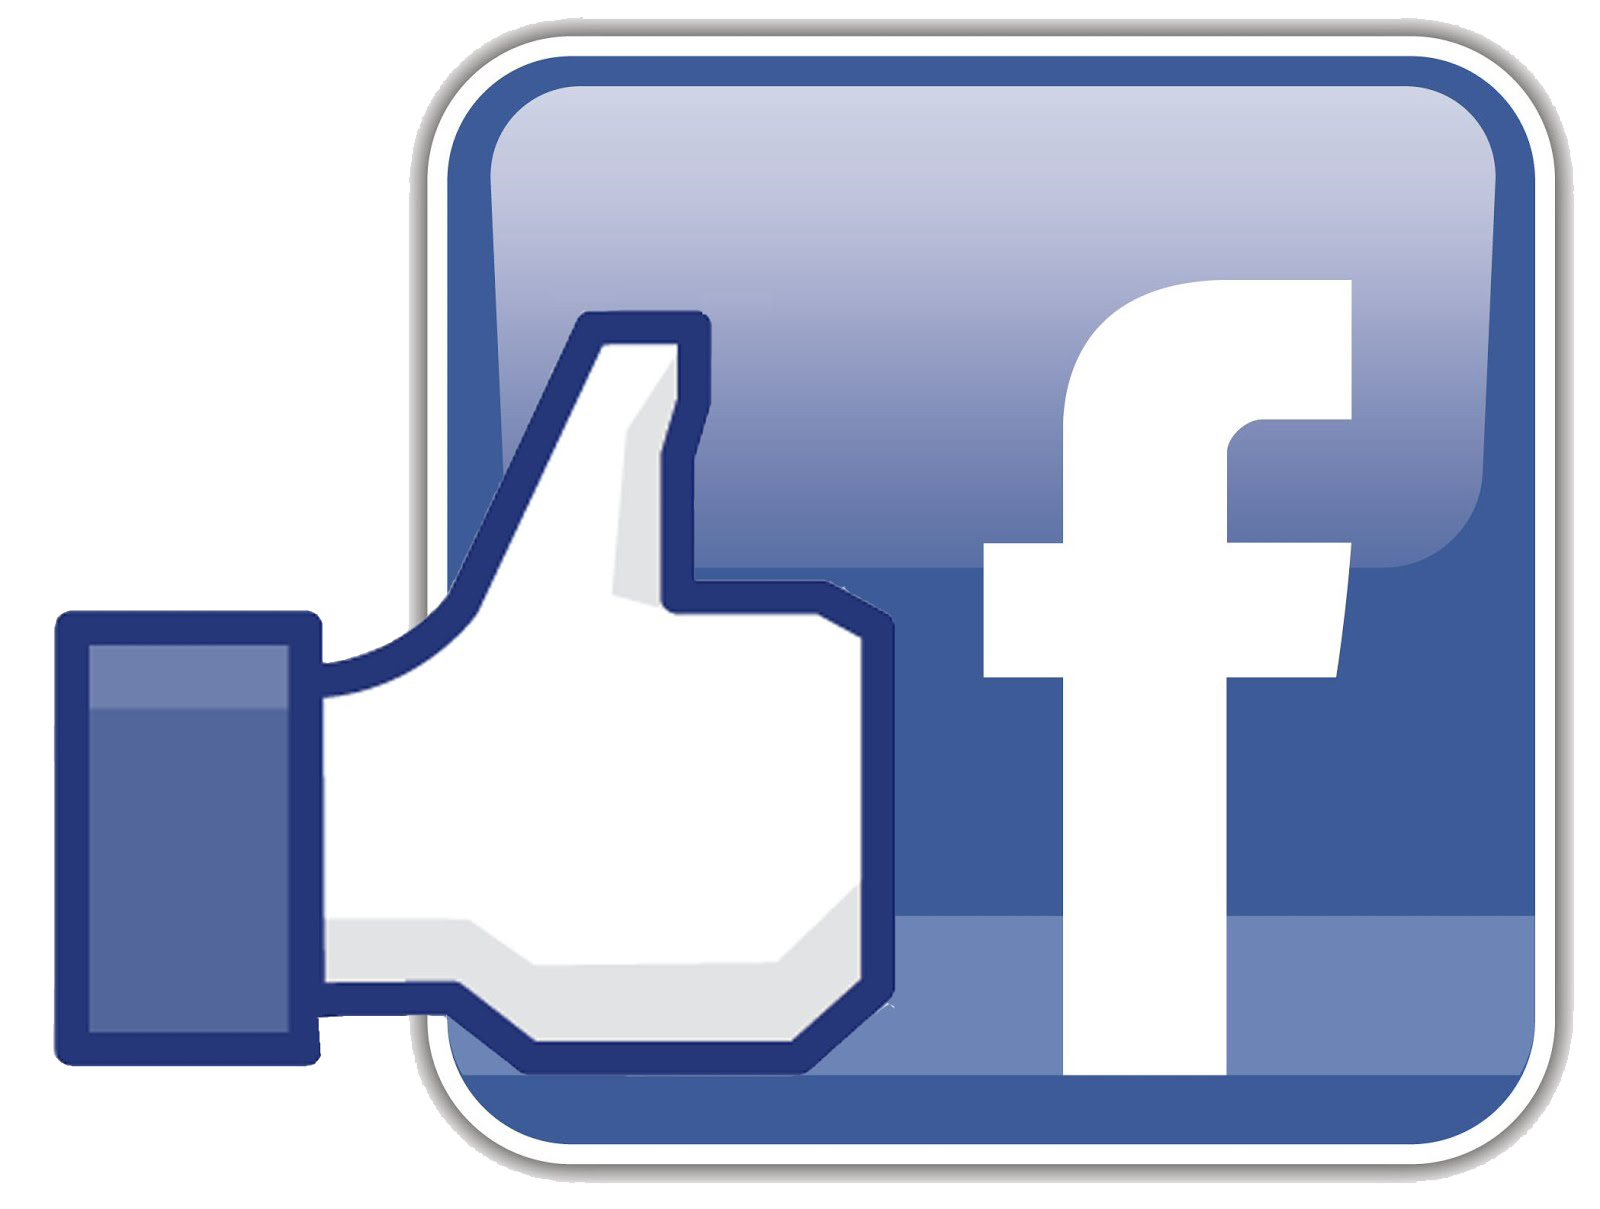 Like us on Facebook logo